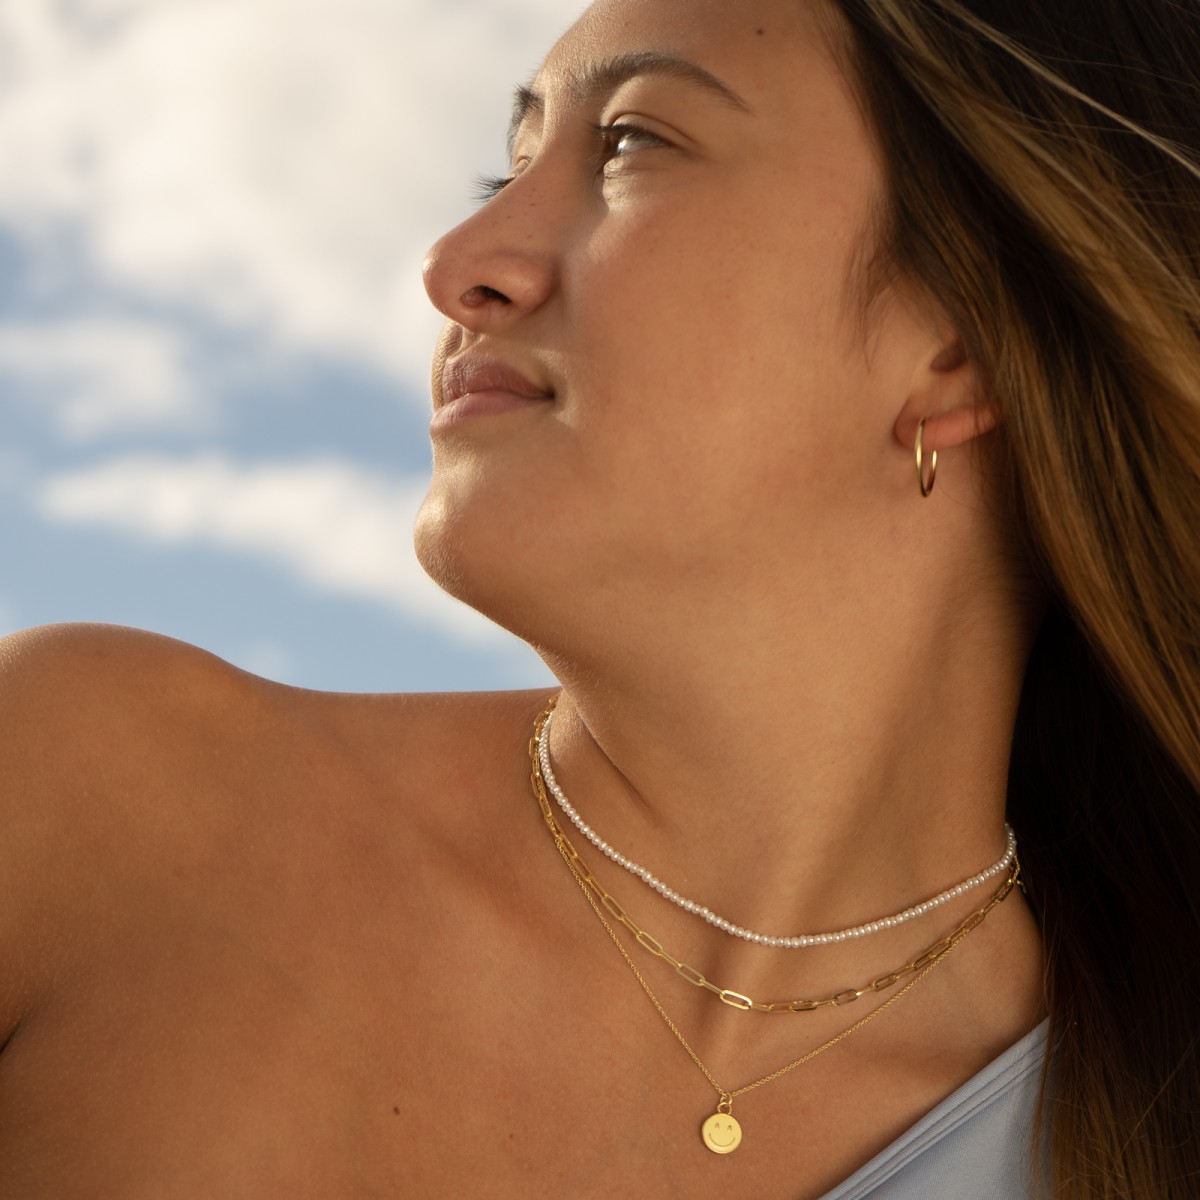 Smiley Necklace | Halskette aus Gold Vermeil | Paeoni Colors 